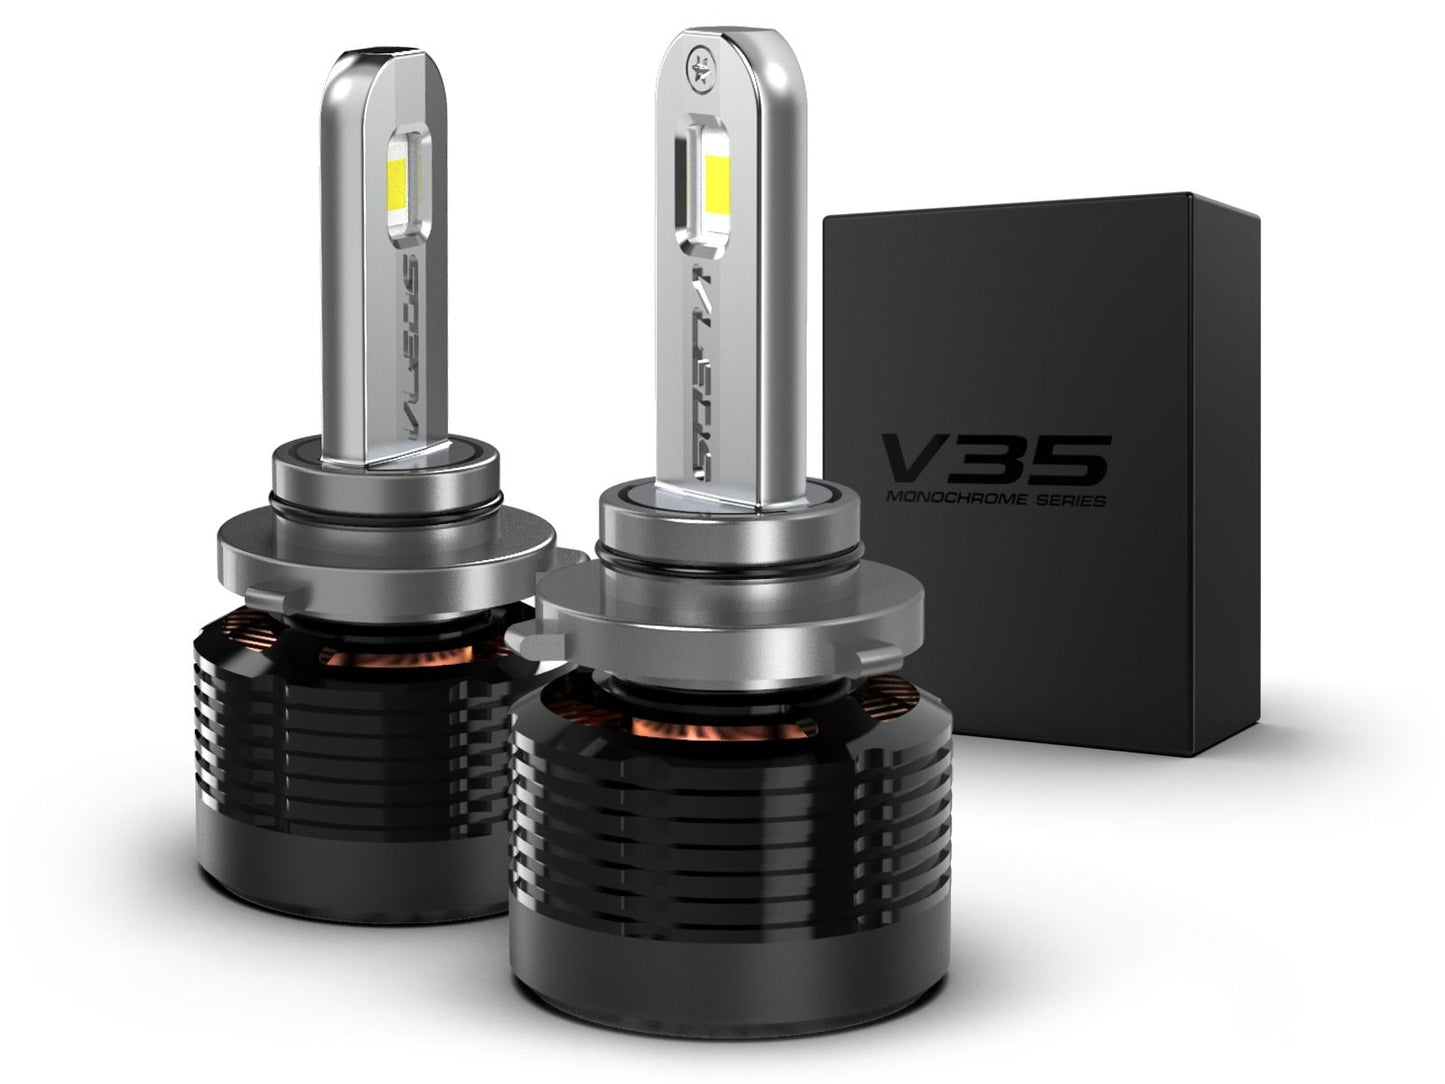 9006: VLEDS V35 Monochrome Series